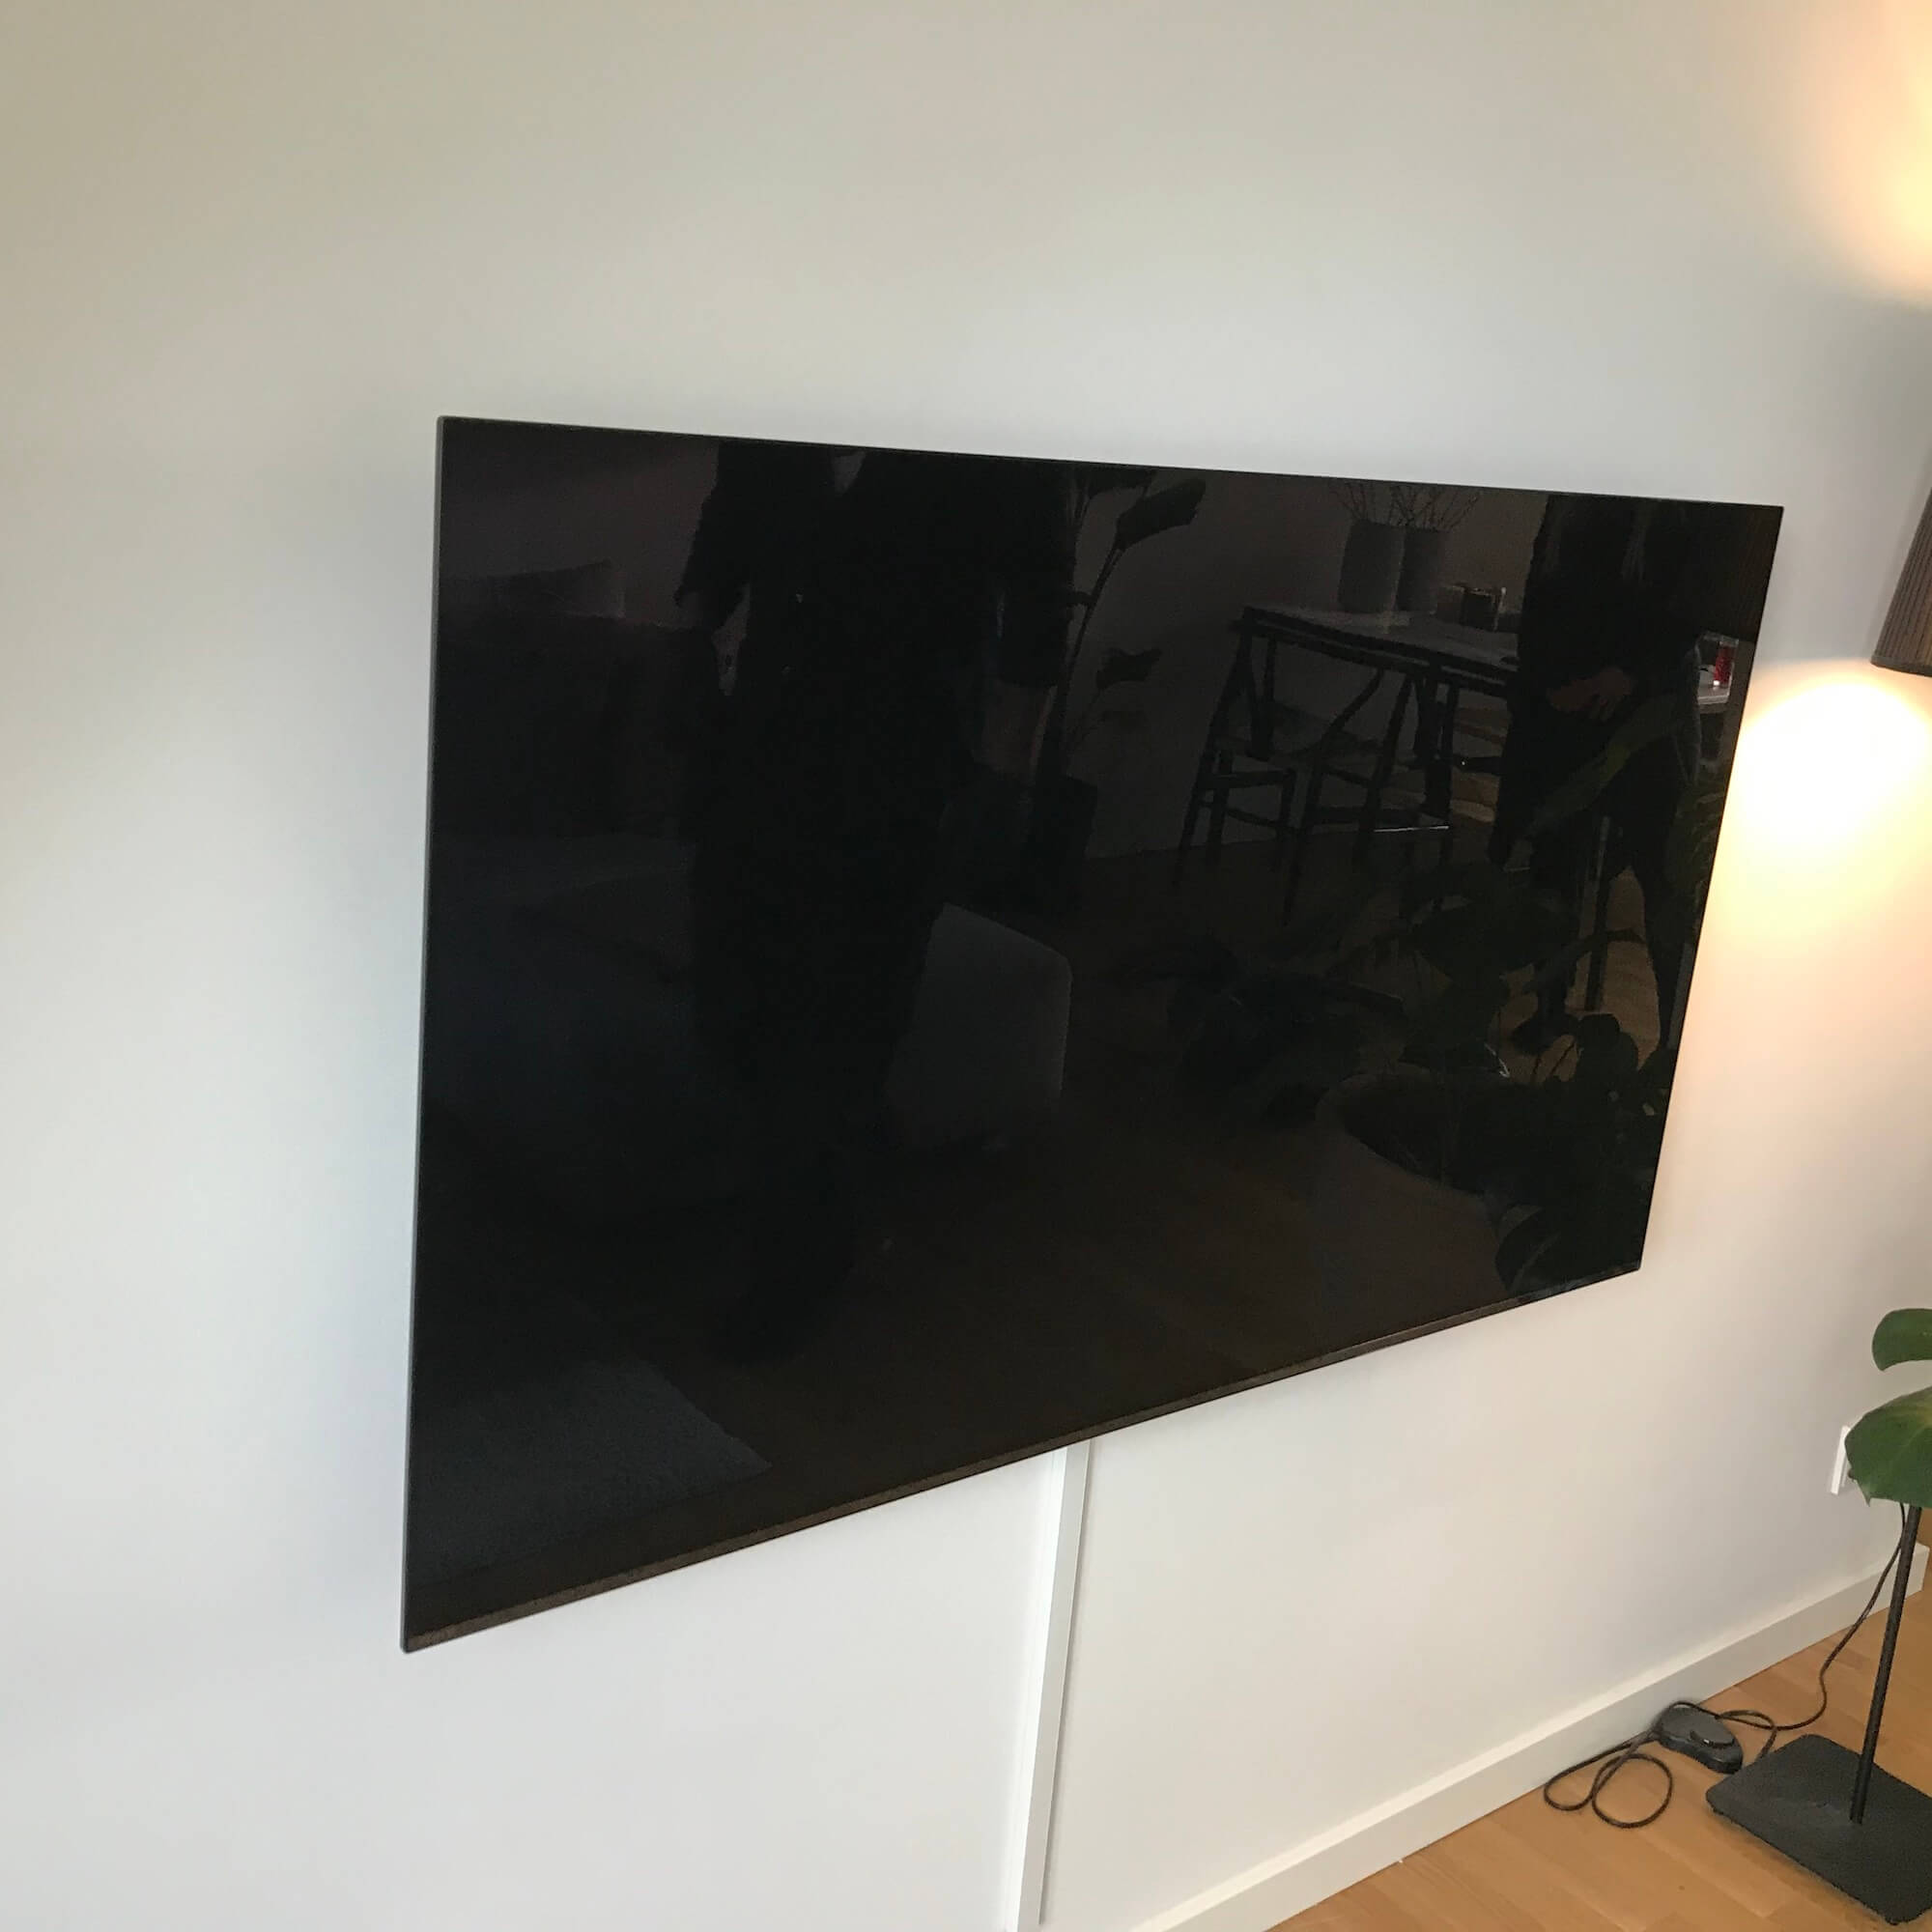 Installation af LG TV på fladt vægbelag